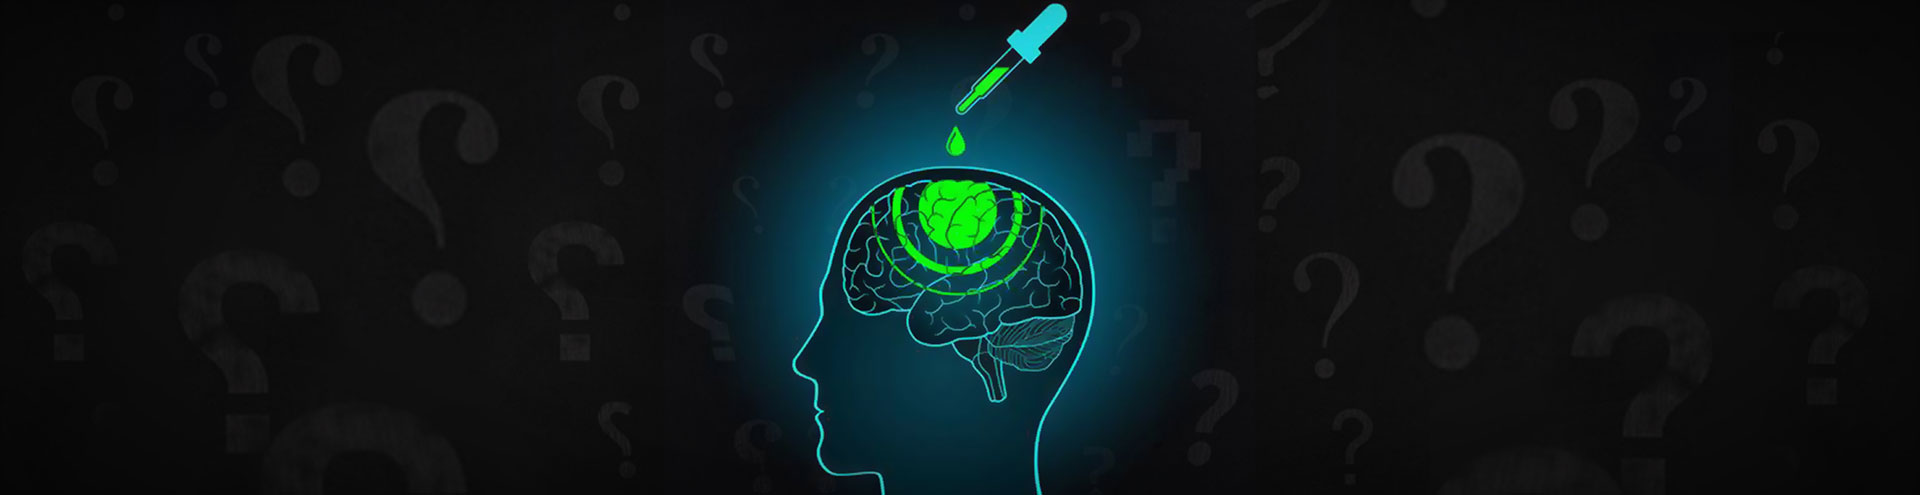 Cuci Otak (Brainwash) dan Pengaruhnya